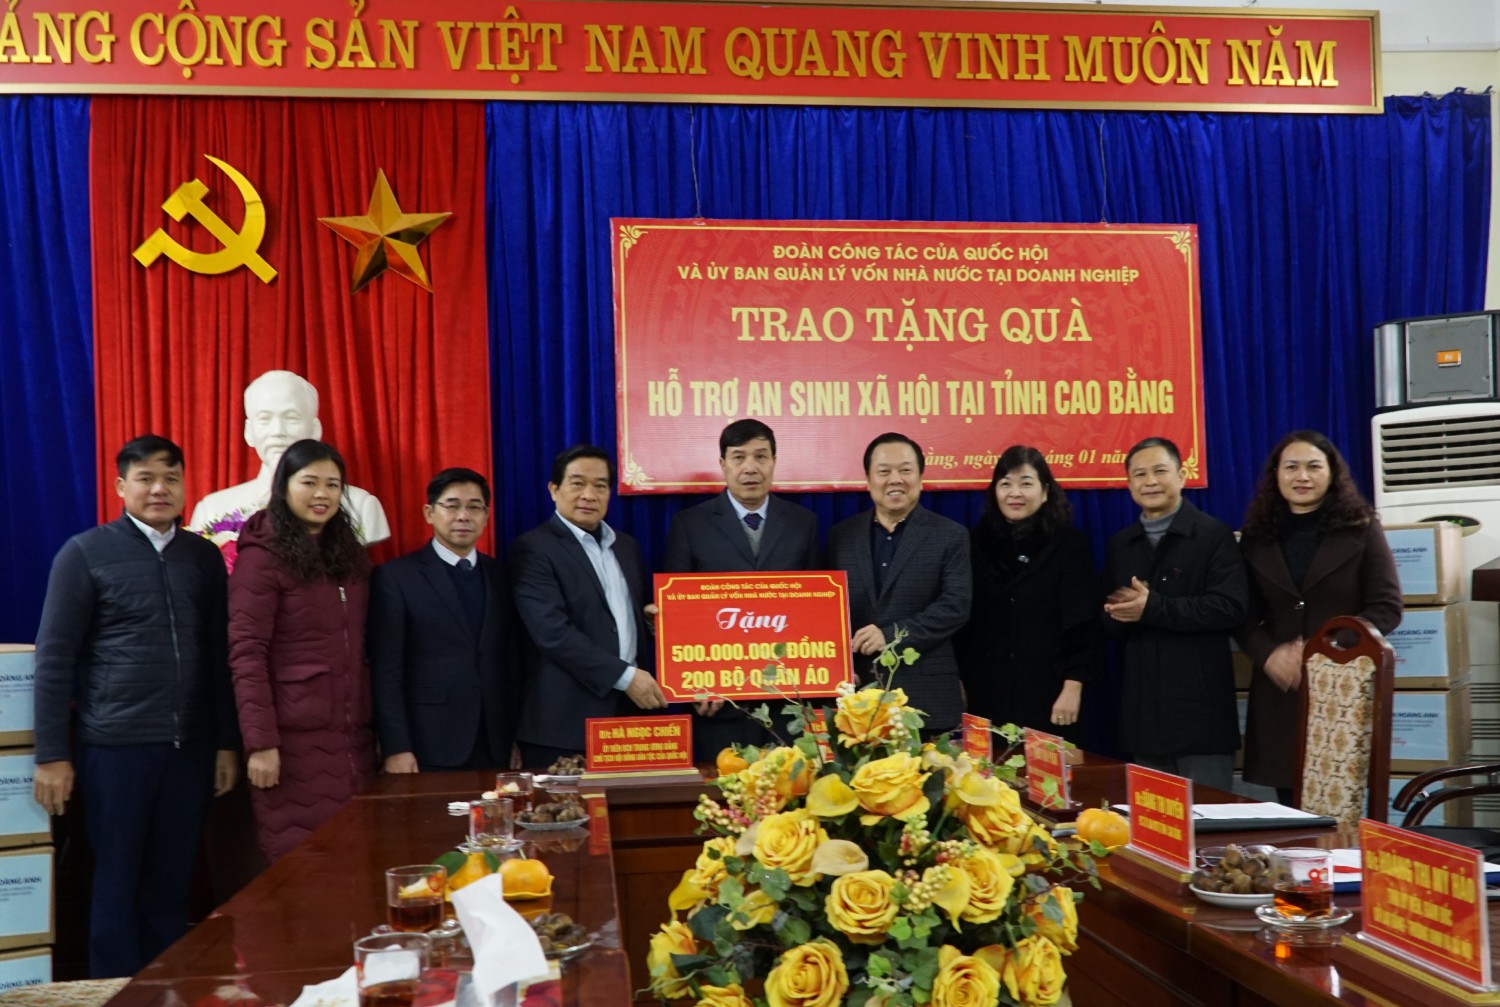 Đoàn công tác của Hội đồng Dân tộc Quốc hội và Ủy ban Quản lý vốn nhà nước tại doanh nghiệp trao quà hỗ trợ an sinh xã hội tại tỉnh Cao Bằng cho Ủy ban MTTQ tỉnh.